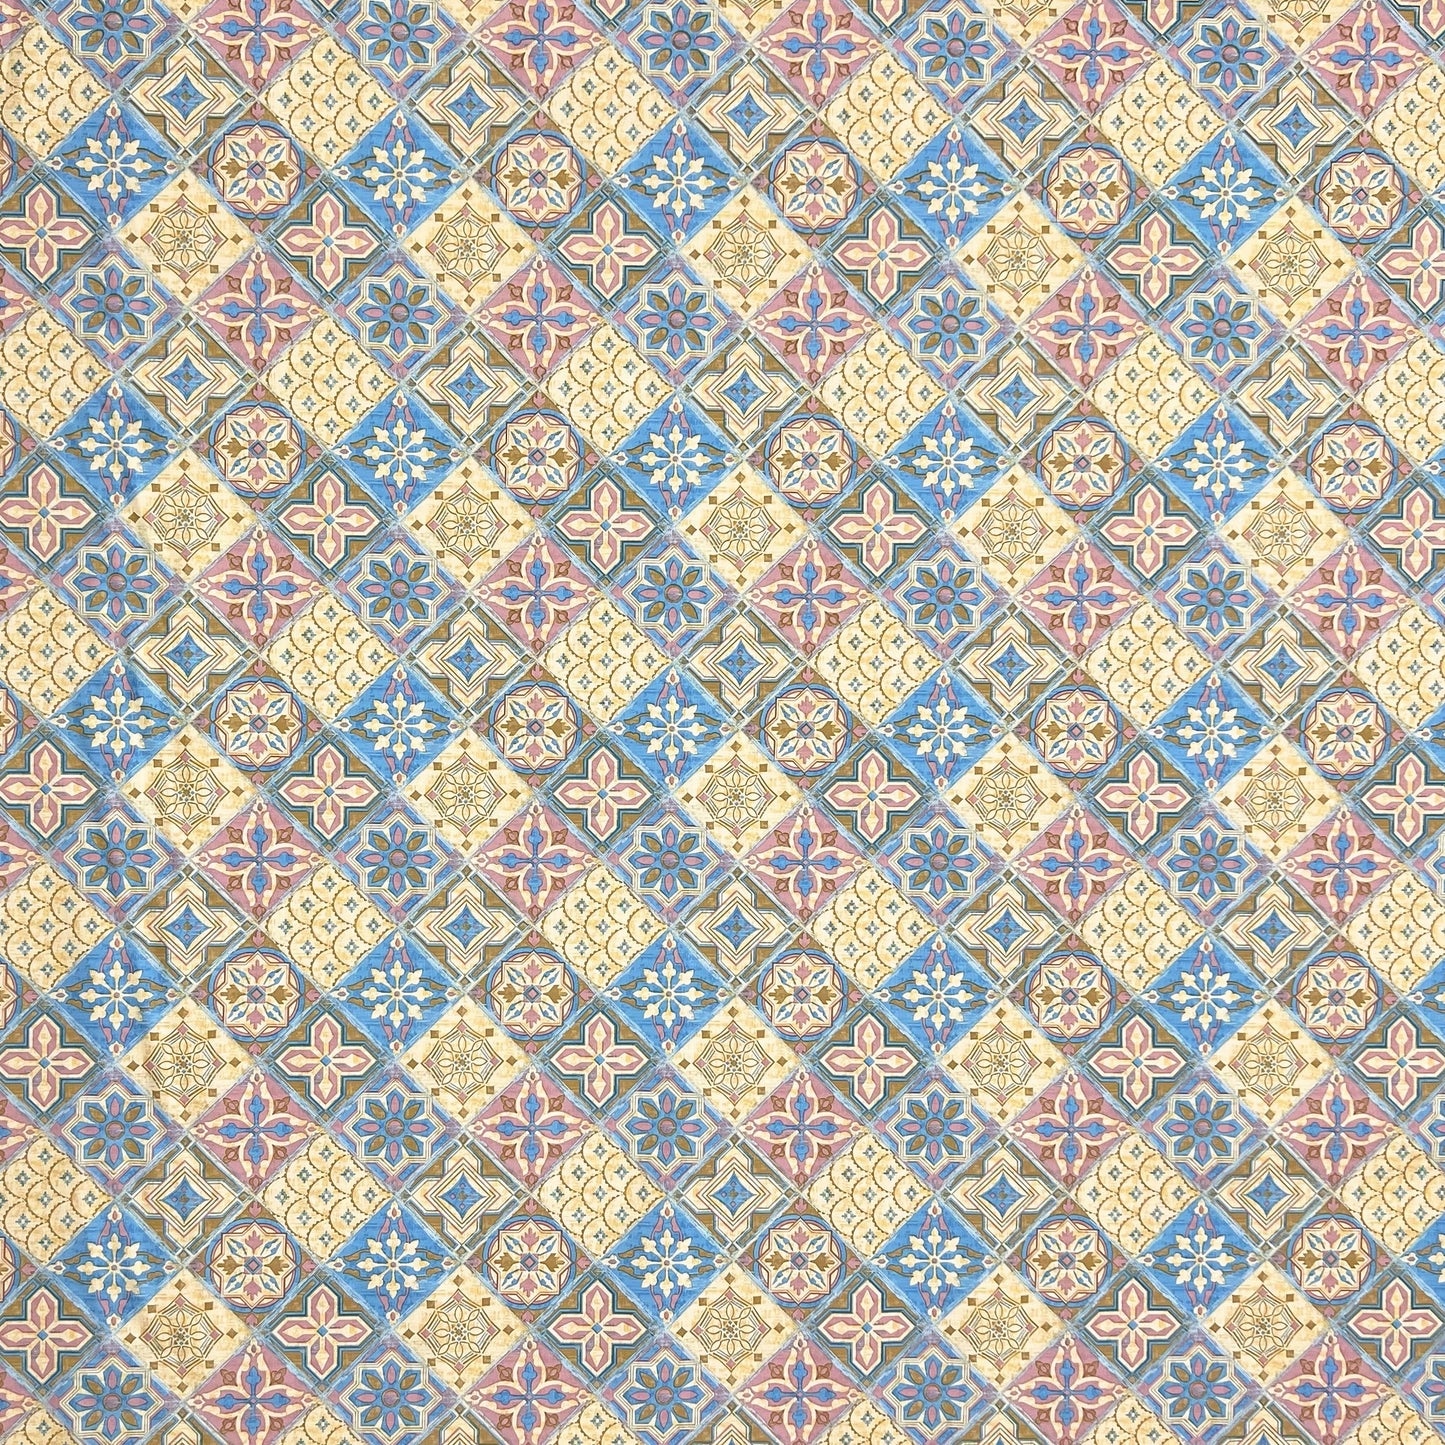 Wachstuch Tischdecke KE43230 Mosaik Fliesen Portugal eckig rund oval